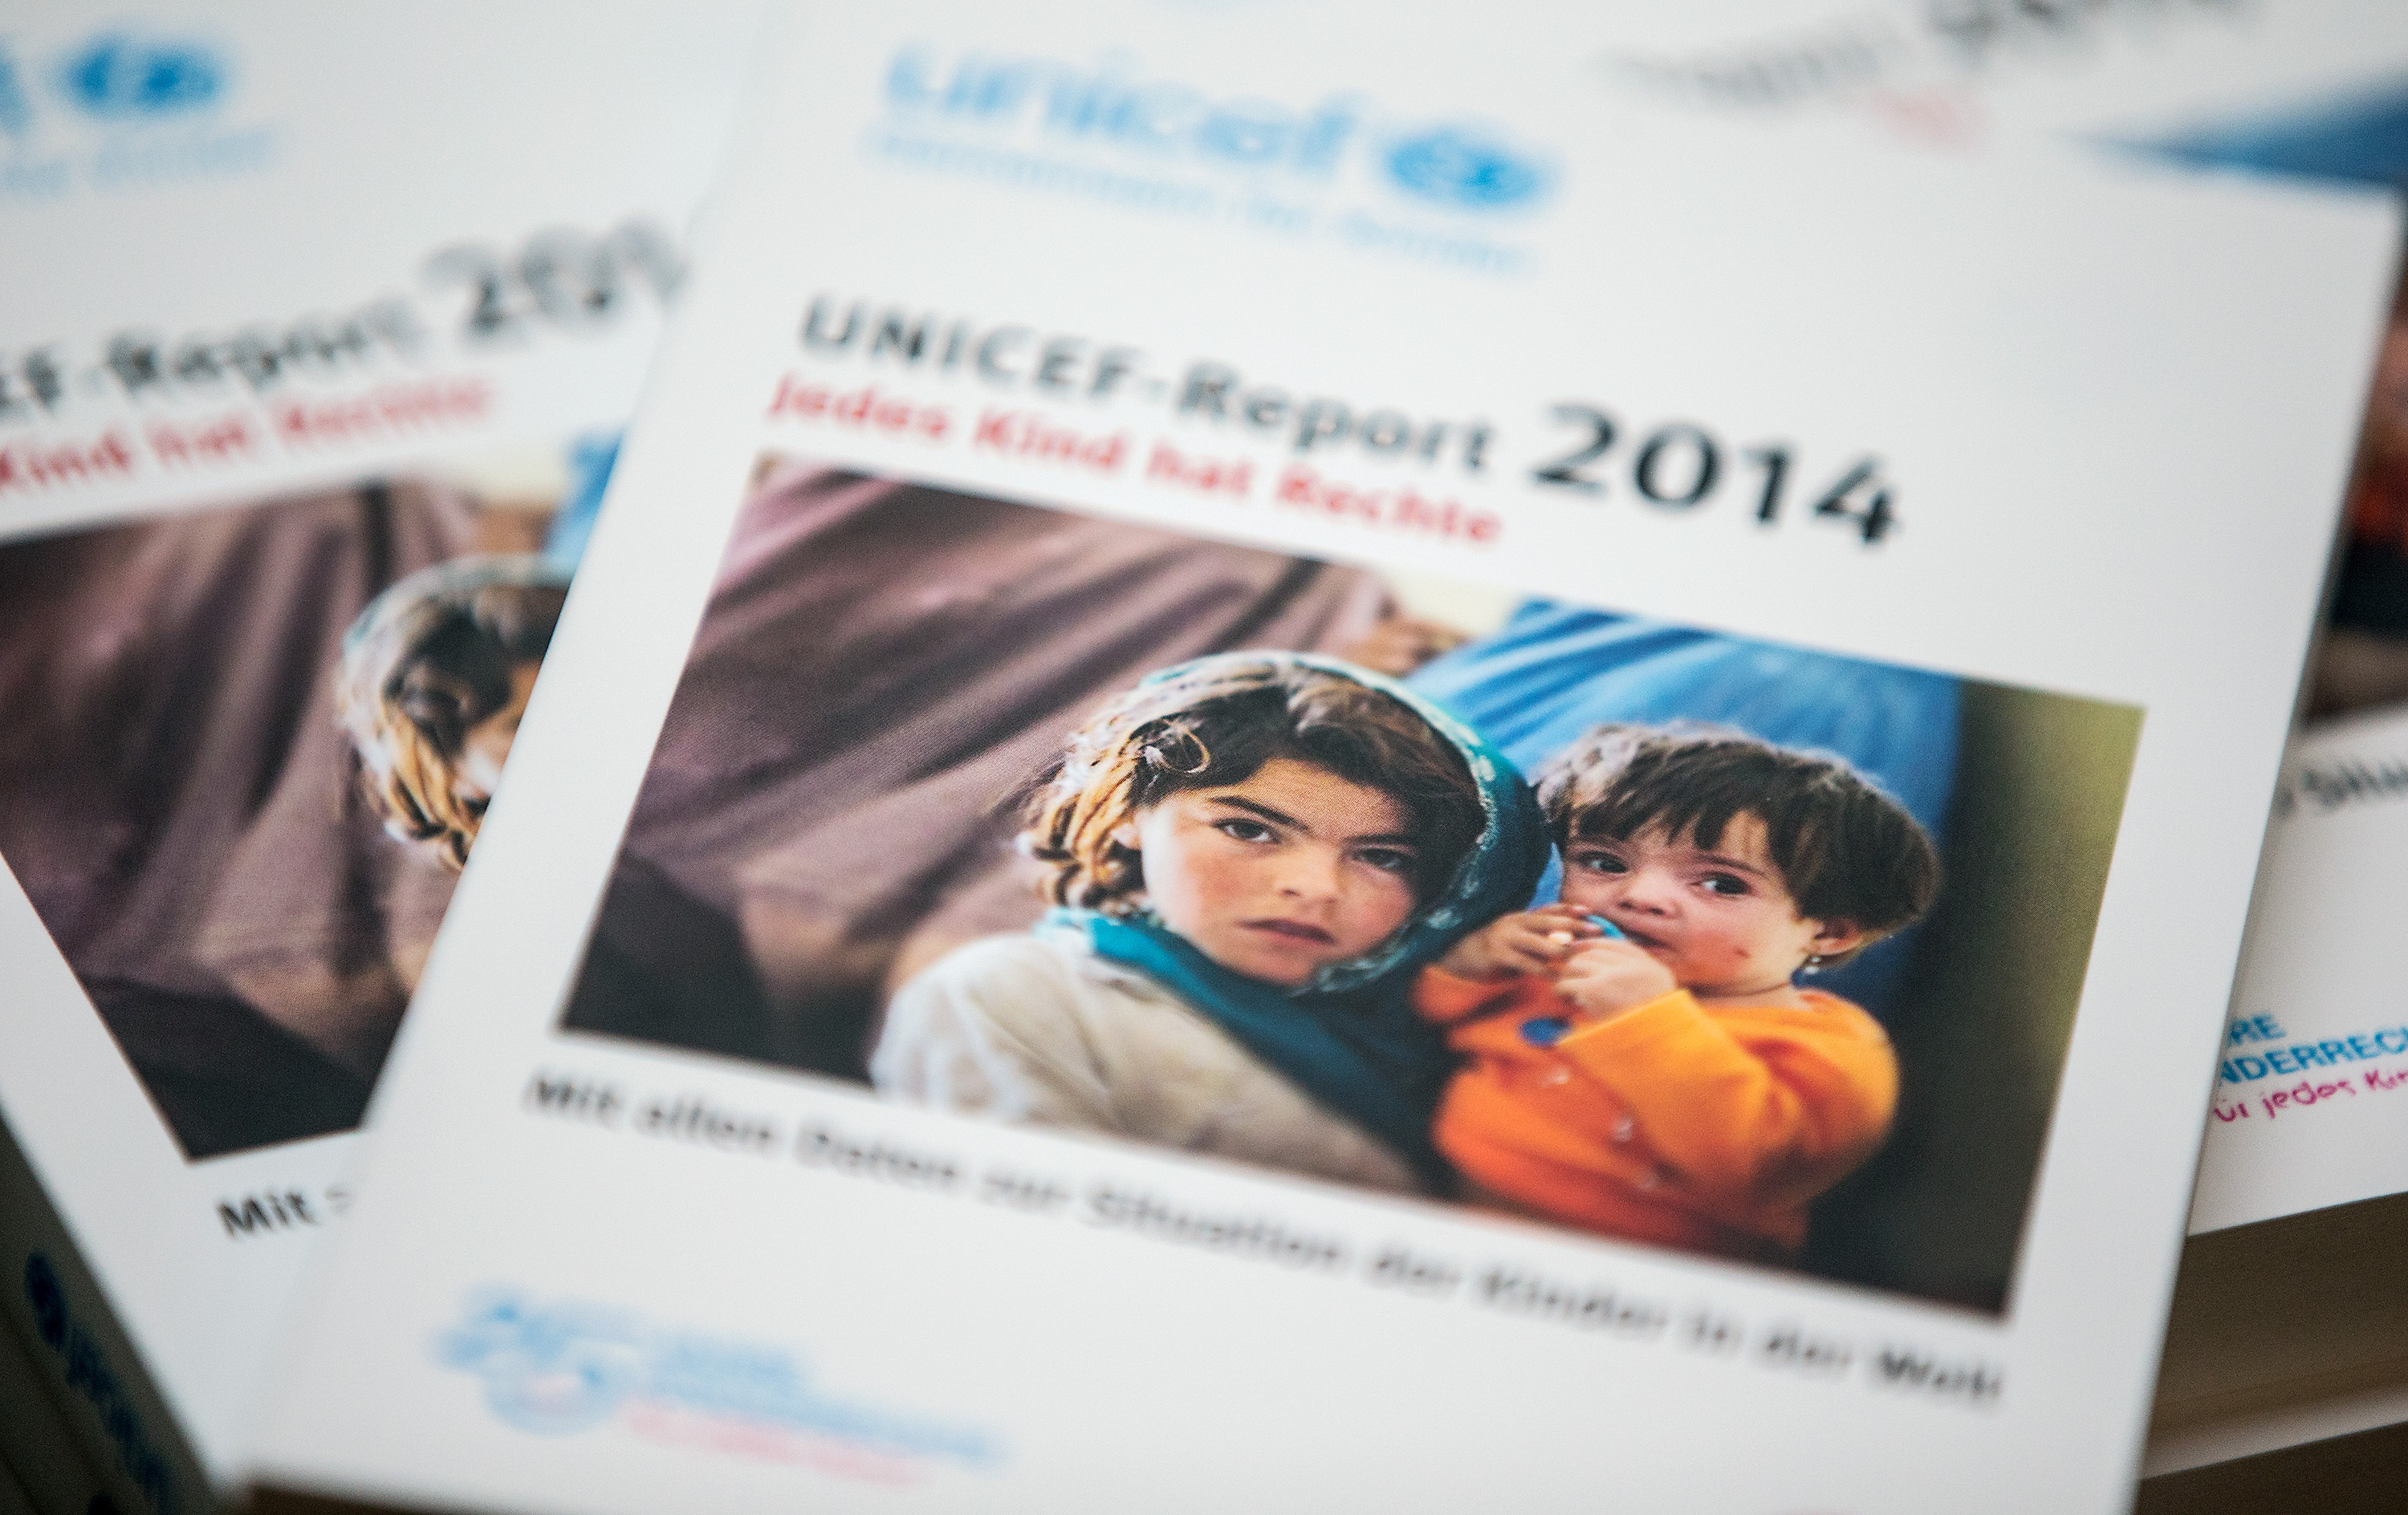 UNICEF's 2014 Report